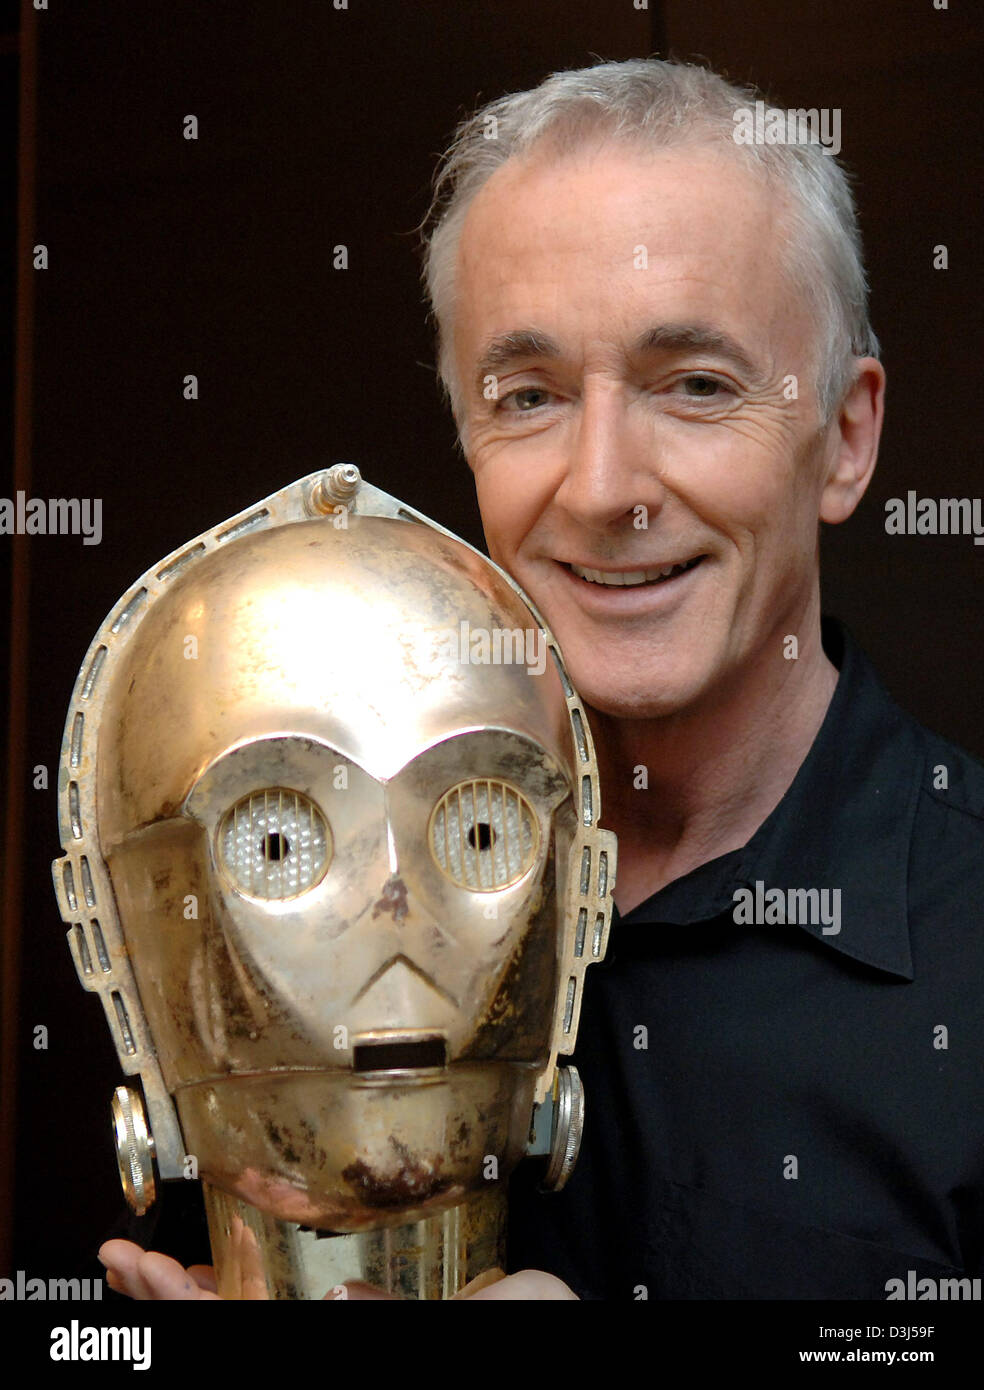 Dpa-Dateien) - britischer Schauspieler Anthony Daniels präsentiert die Maske  der Roboter C3PO, die er in der "Star Wars" - Filme seit 1977 bei einem  Dpa-Interview in Stuttgart, Deutschland spielt. Obwohl sein Gesicht